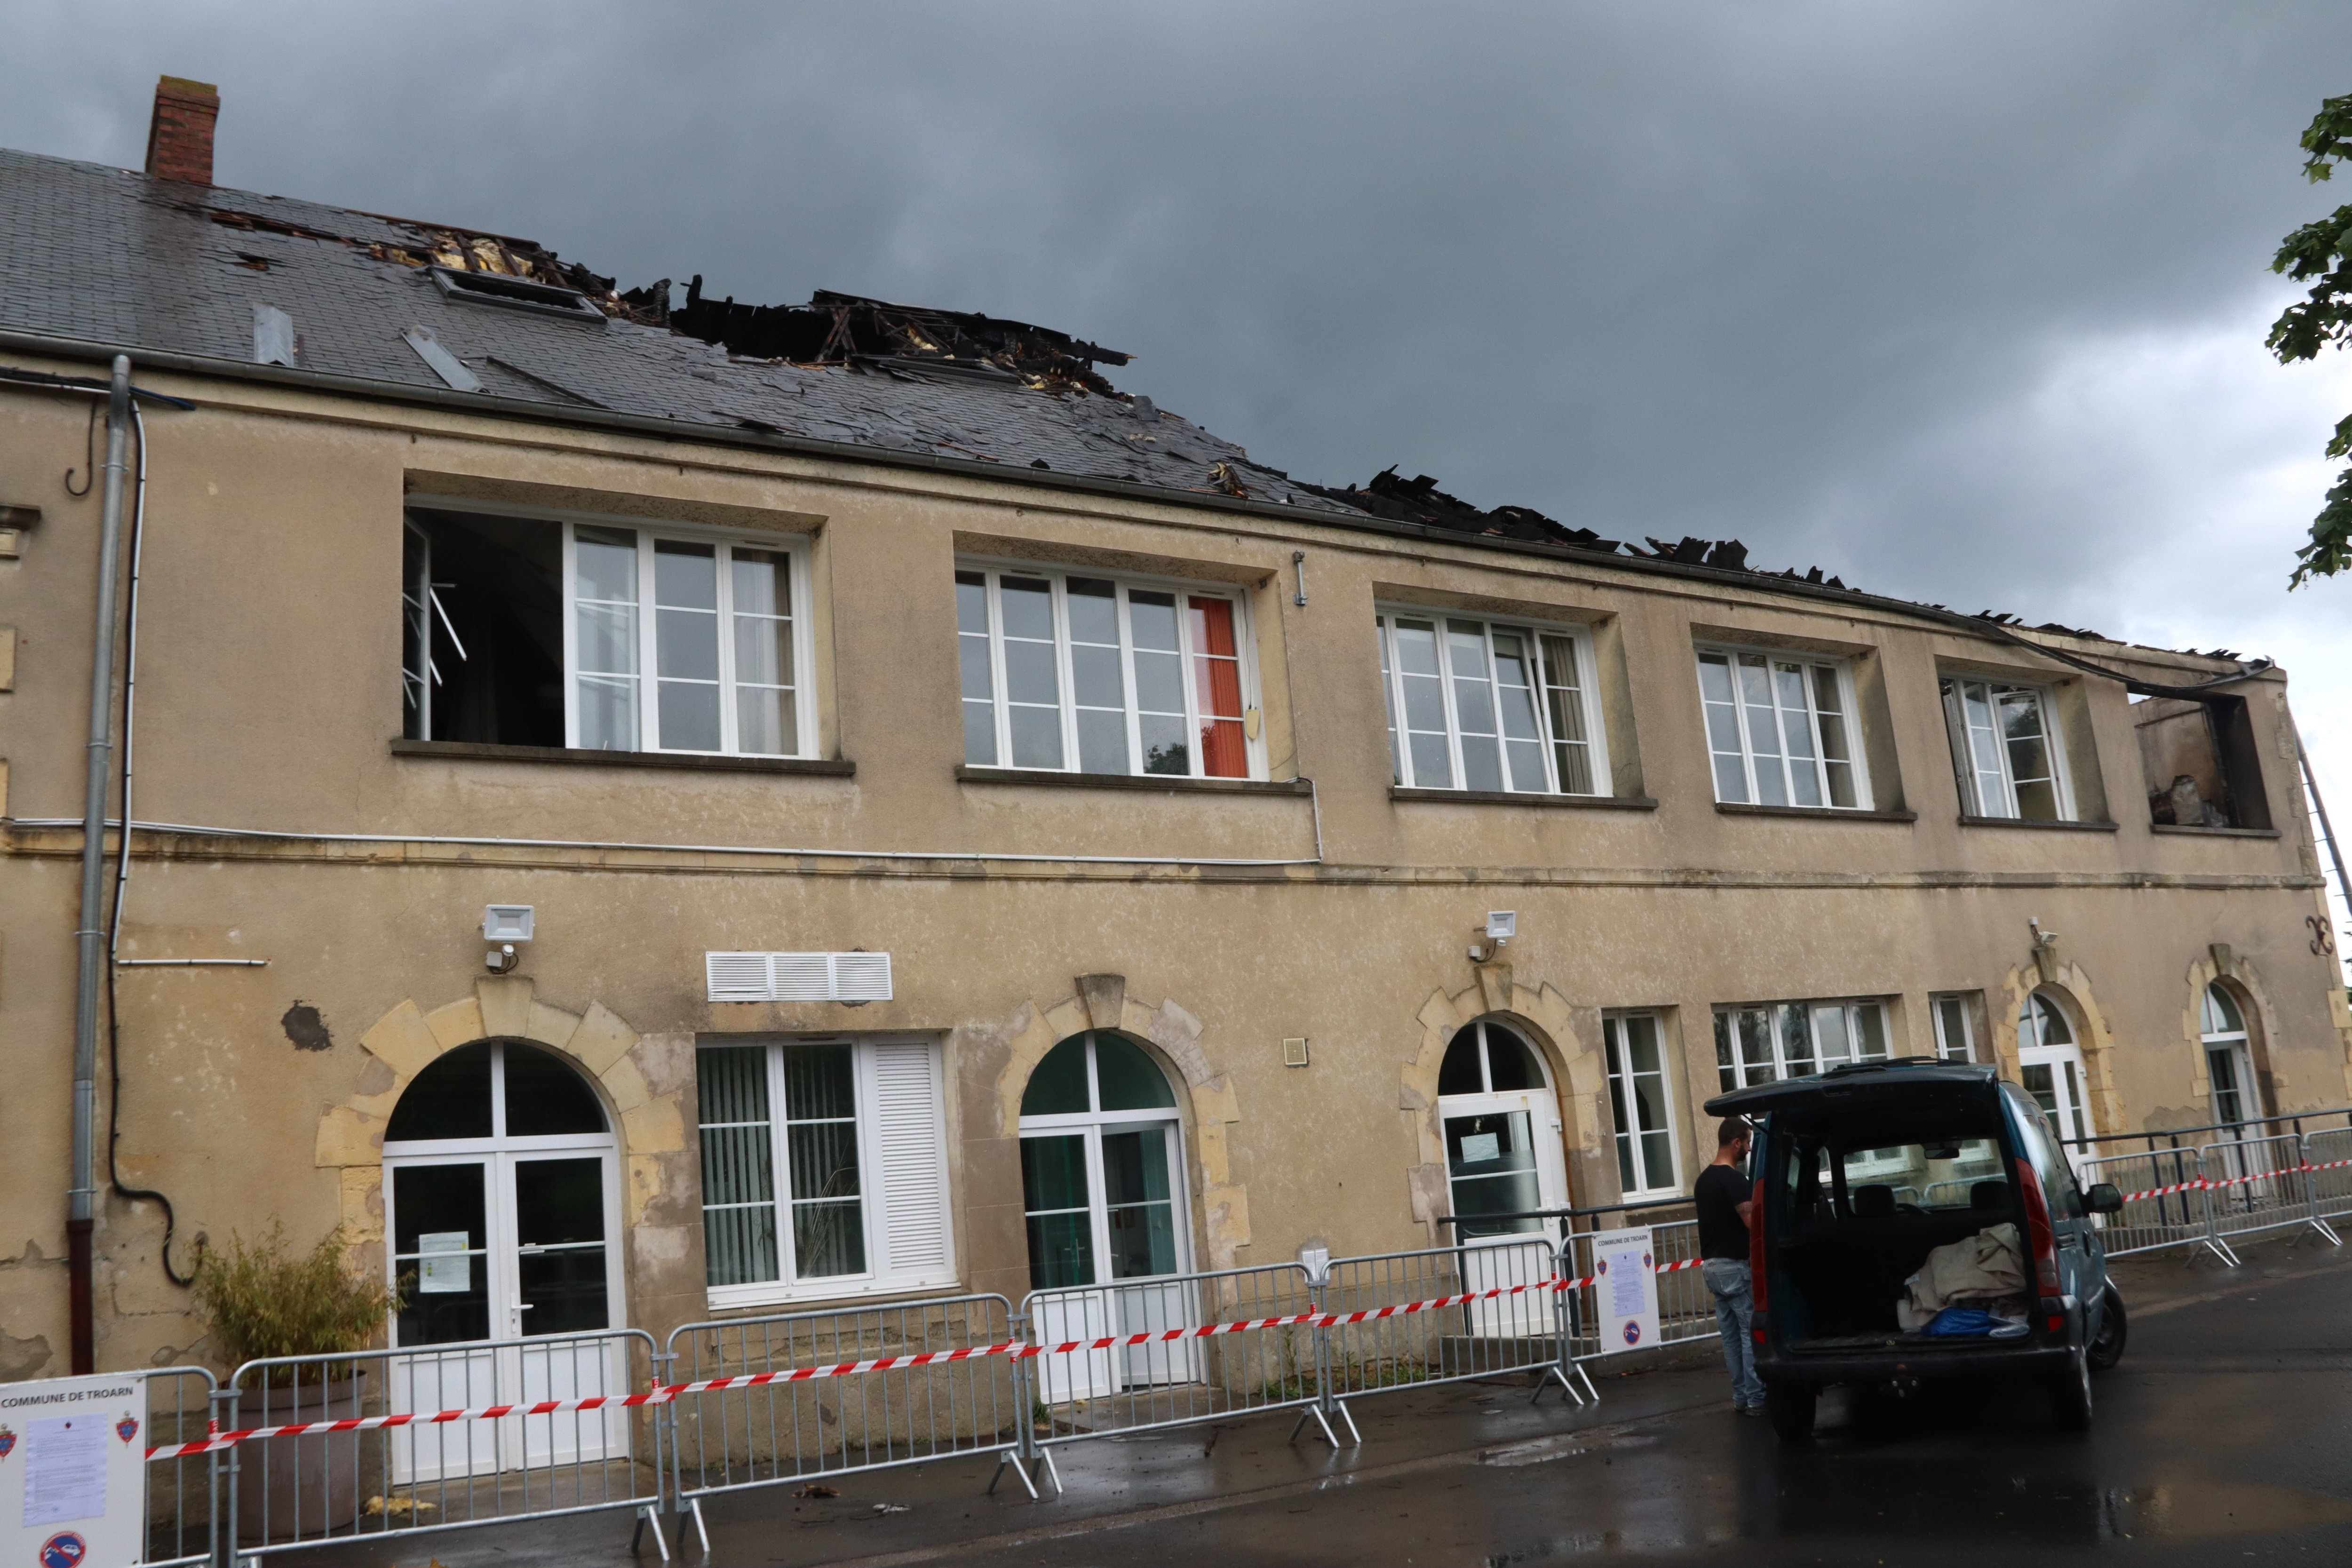 Le bâtiment de la Maison d'enfants à Troarn (Calvados) a été dévasté par les flammes causées par la foudre, dimanche 15 mai au soir. Une large partie de la toiture est partie en fumée. LP/Esteban Pinel